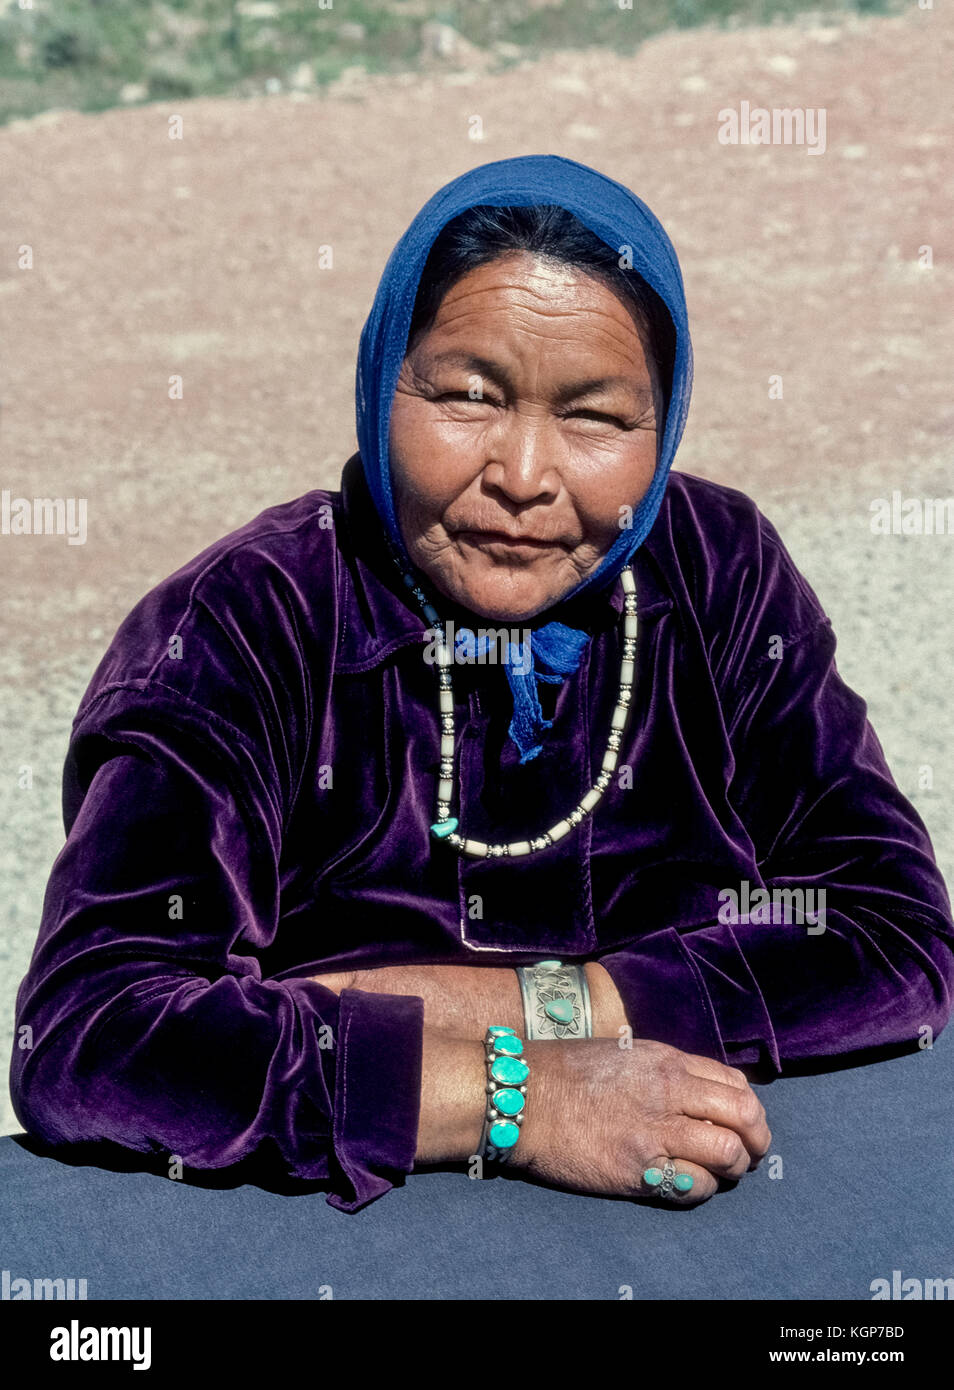 Un Navajo Native American donna che vendeva indiano collane di perle lungo la strada comporta per un ritratto informale vicino a Cameron, Arizona, Stati Uniti d'America, parte della Navajo Nation di circa 250.000 i popoli indigeni che vivono in un territorio di prenotazione che coprono più di 27,400 miglia quadrate (70965 chilometri quadrati) nel sudovest degli Stati Uniti. Foto Stock